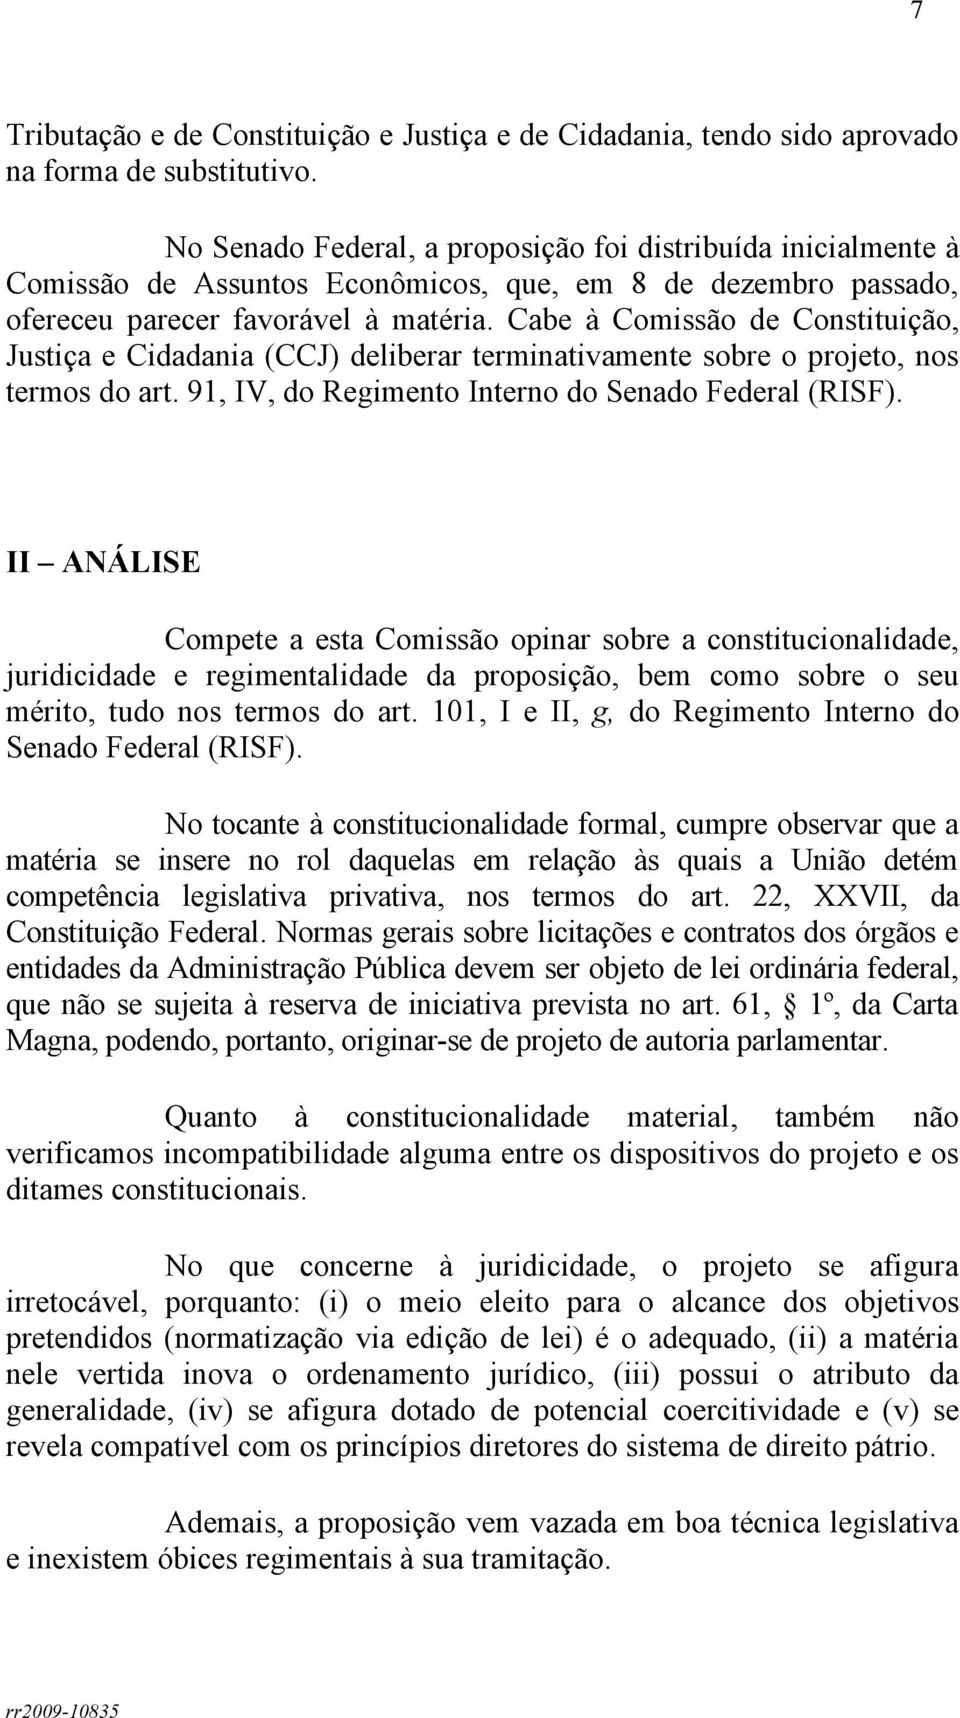 Cabe à Comissão de Constituição, Justiça e Cidadania (CCJ) deliberar terminativamente sobre o projeto, nos termos do art. 91, IV, do Regimento Interno do Senado Federal (RISF).